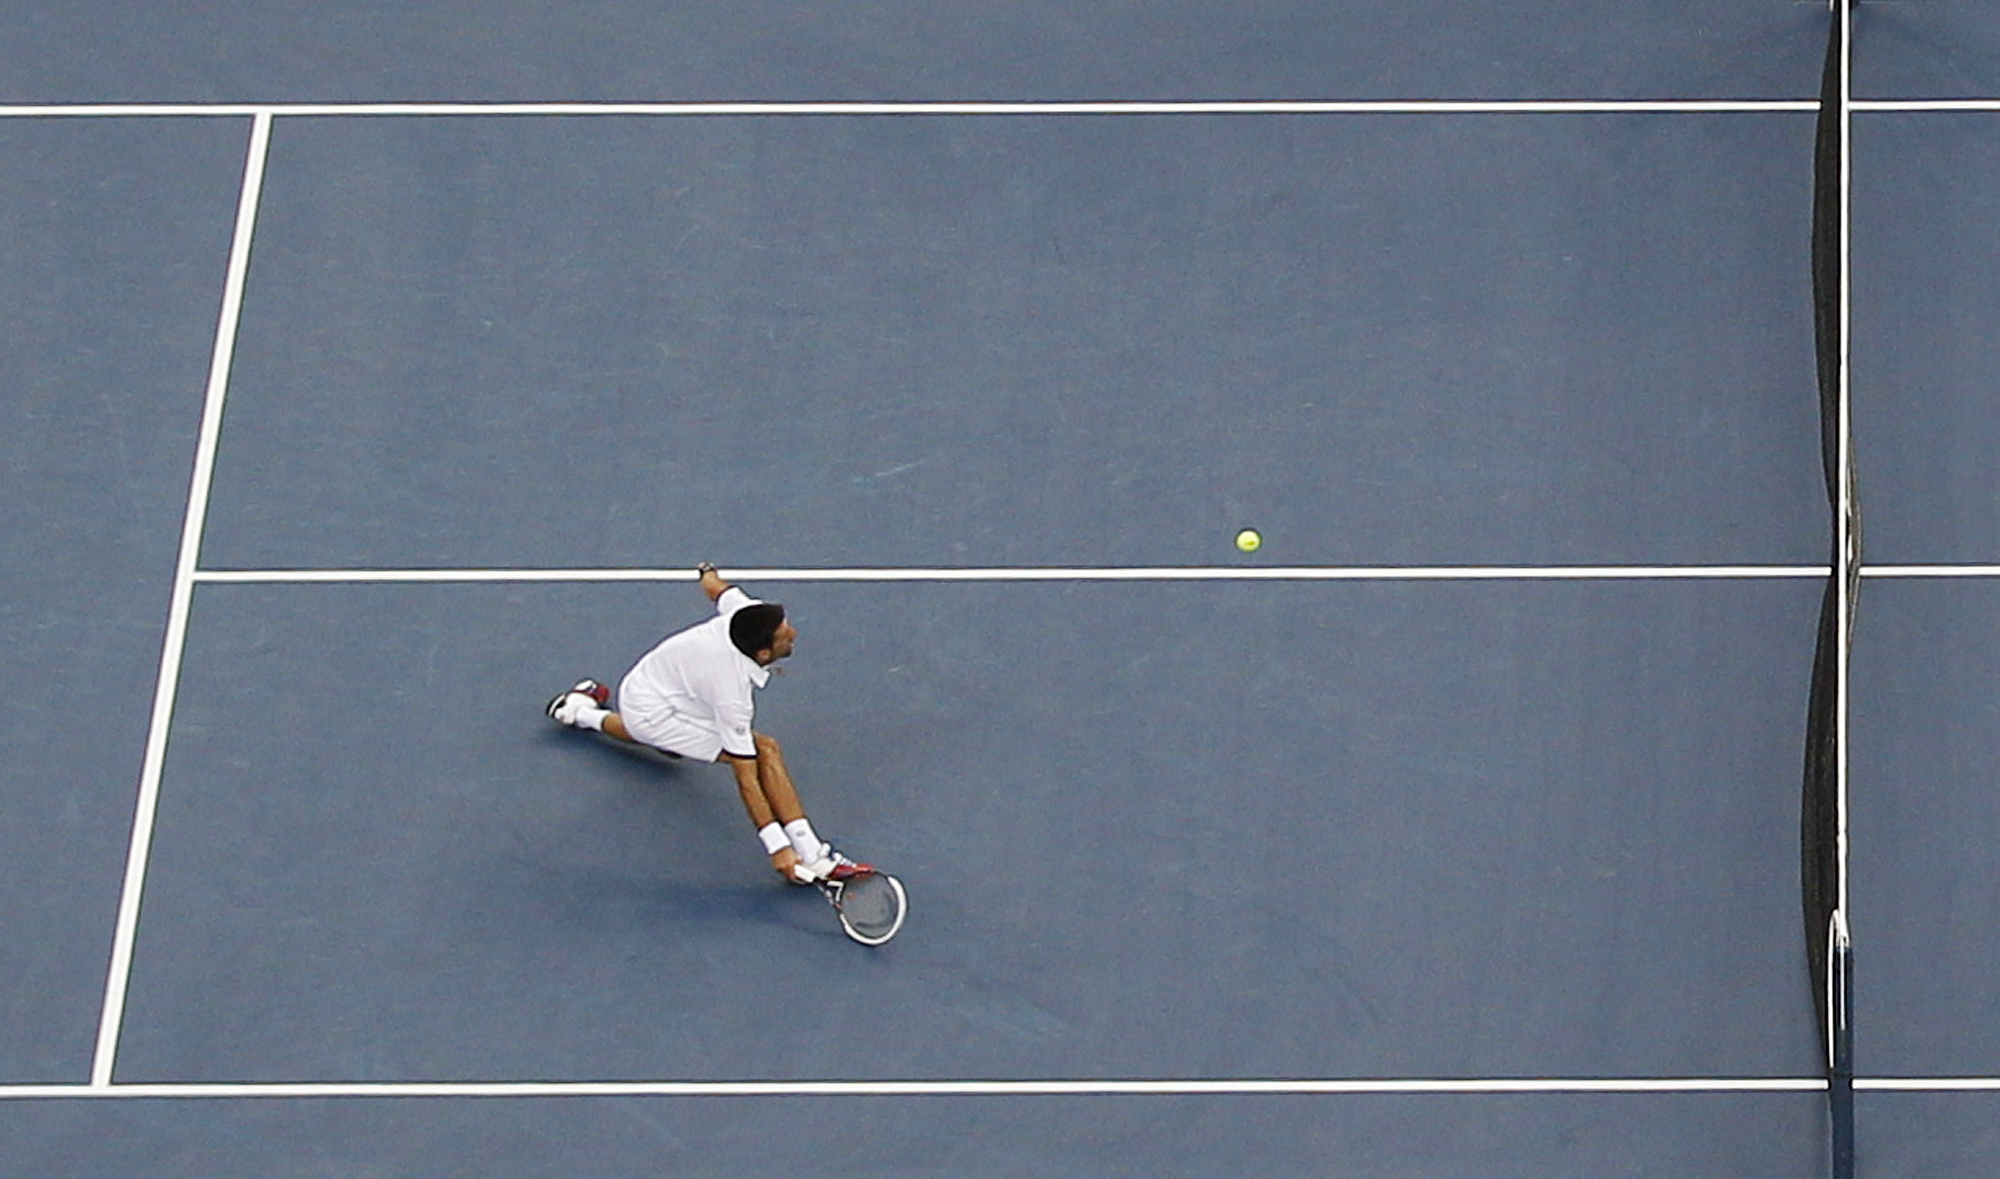 US Open, Tennis, Rafael Nadal, Novak Djokovic, Roger Federer